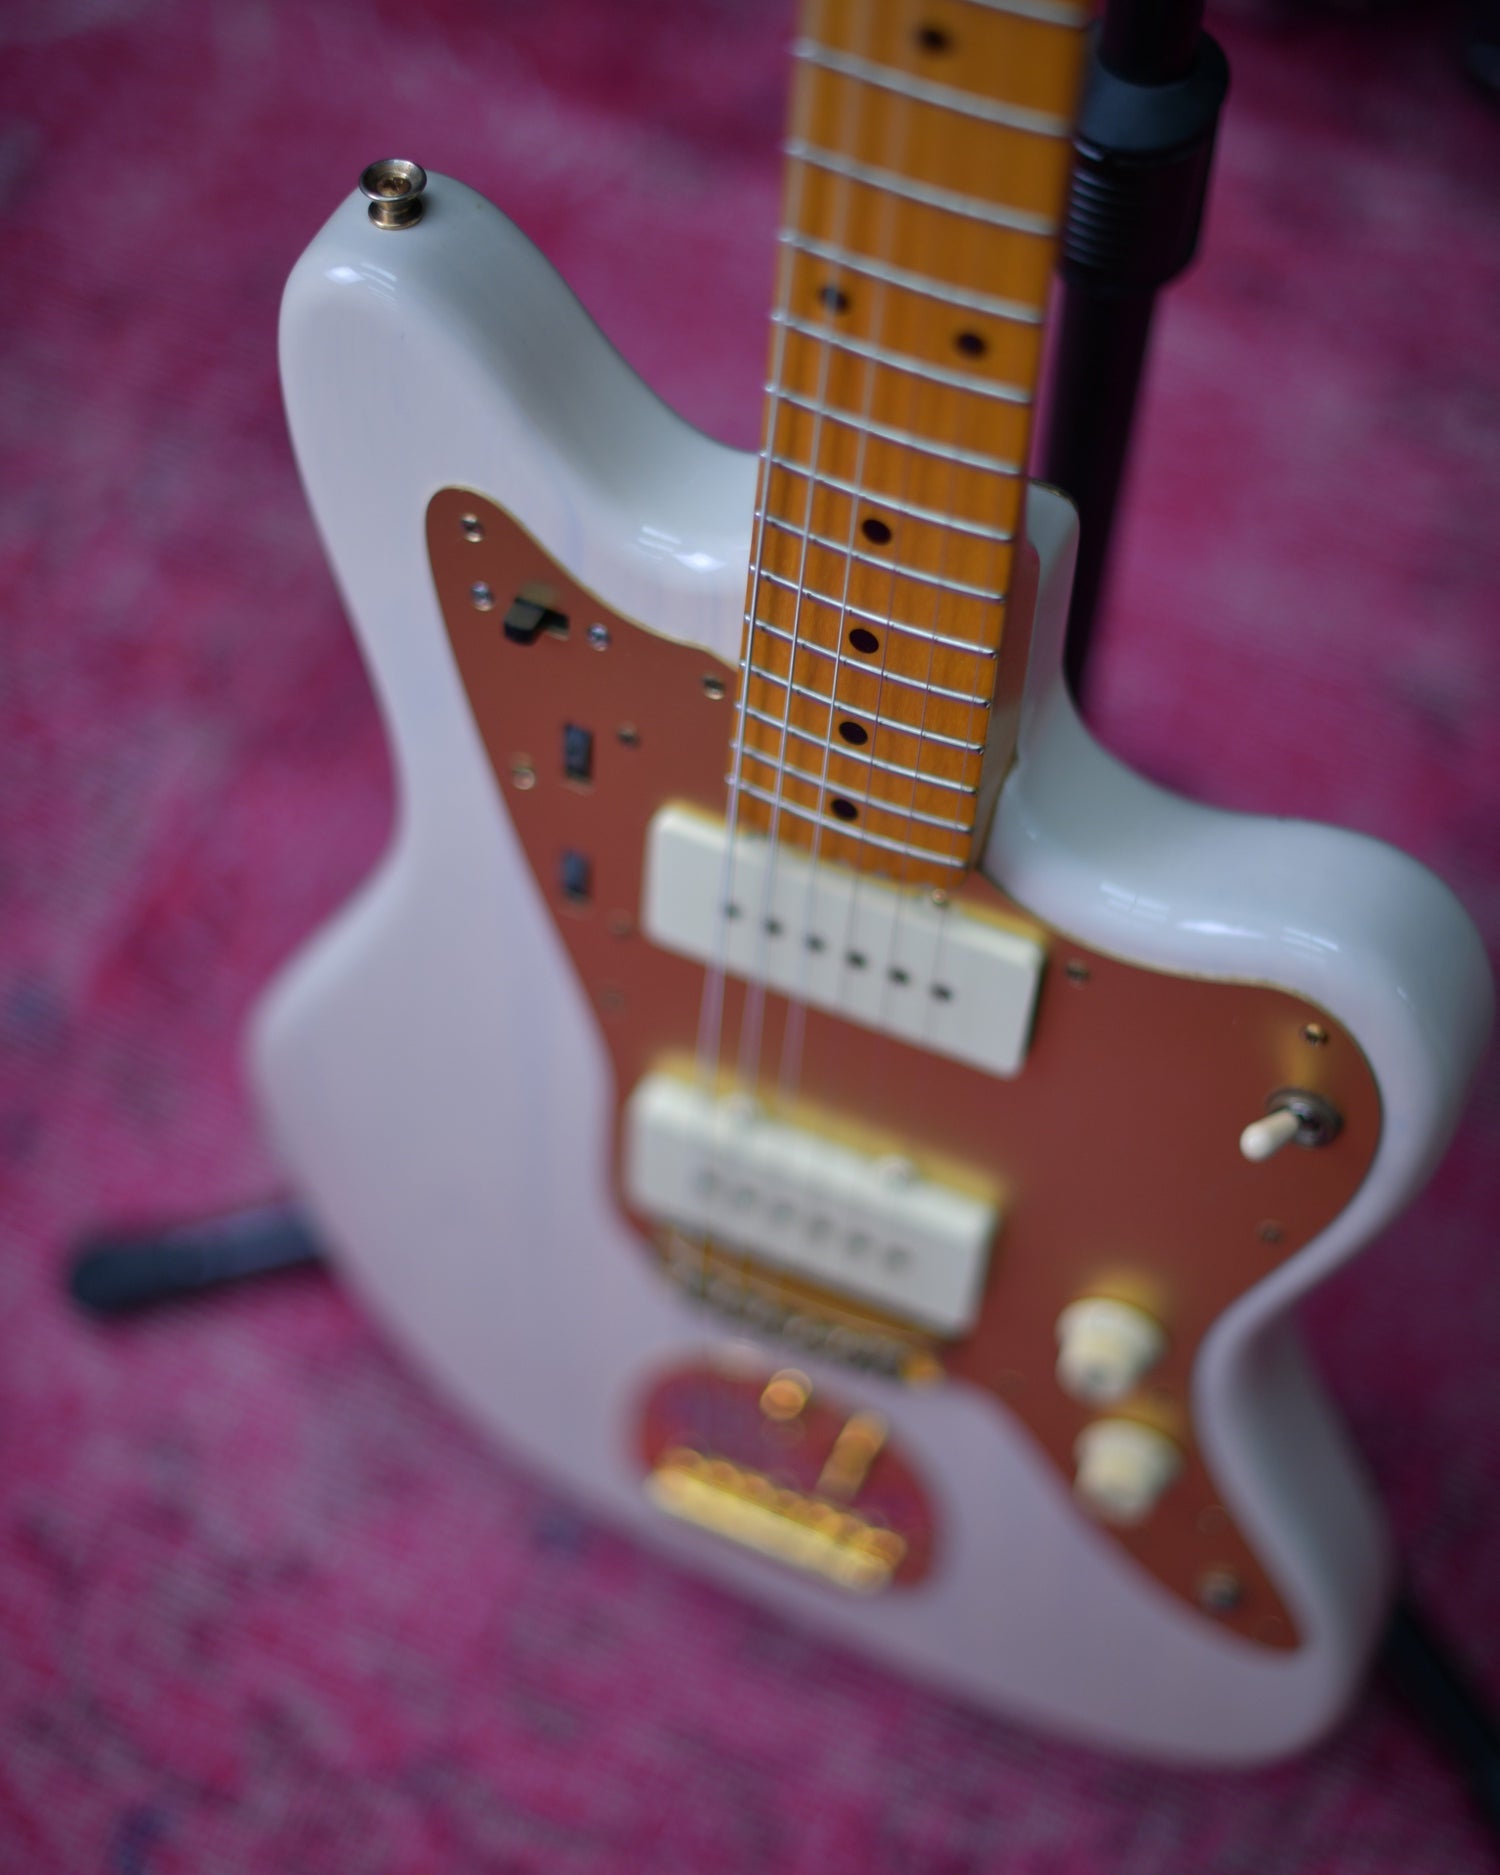 Fender Japan Jazzmaster Limited Edition JM66G US Blonde MIJ 2012